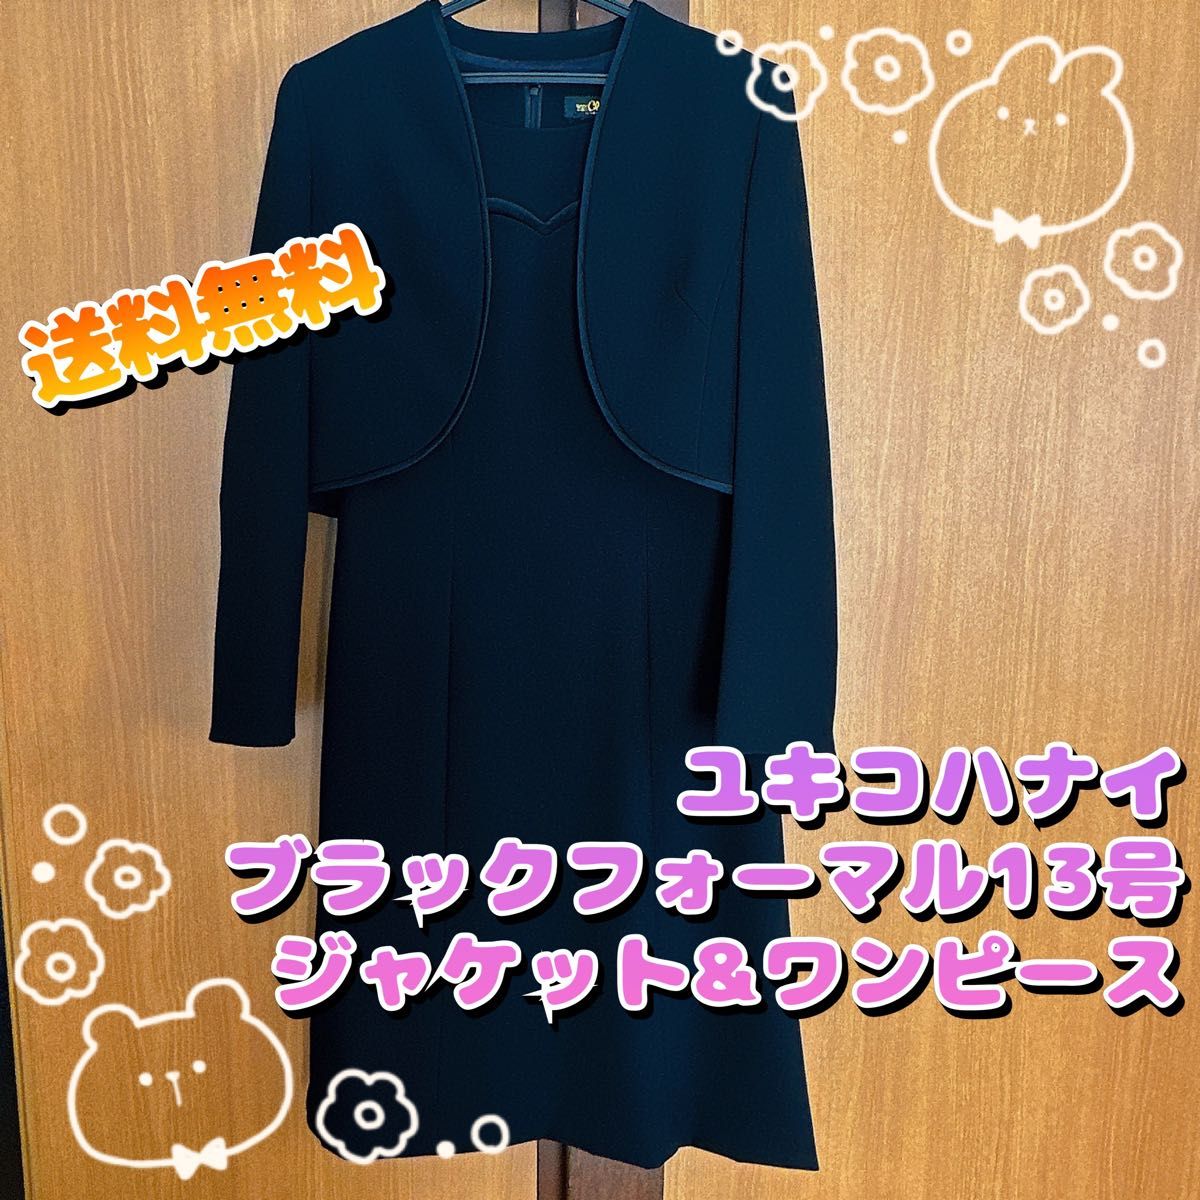 新品☆4L喪服礼服ブラックフォーマル黒マント風デザインワンピース☆s300 通販